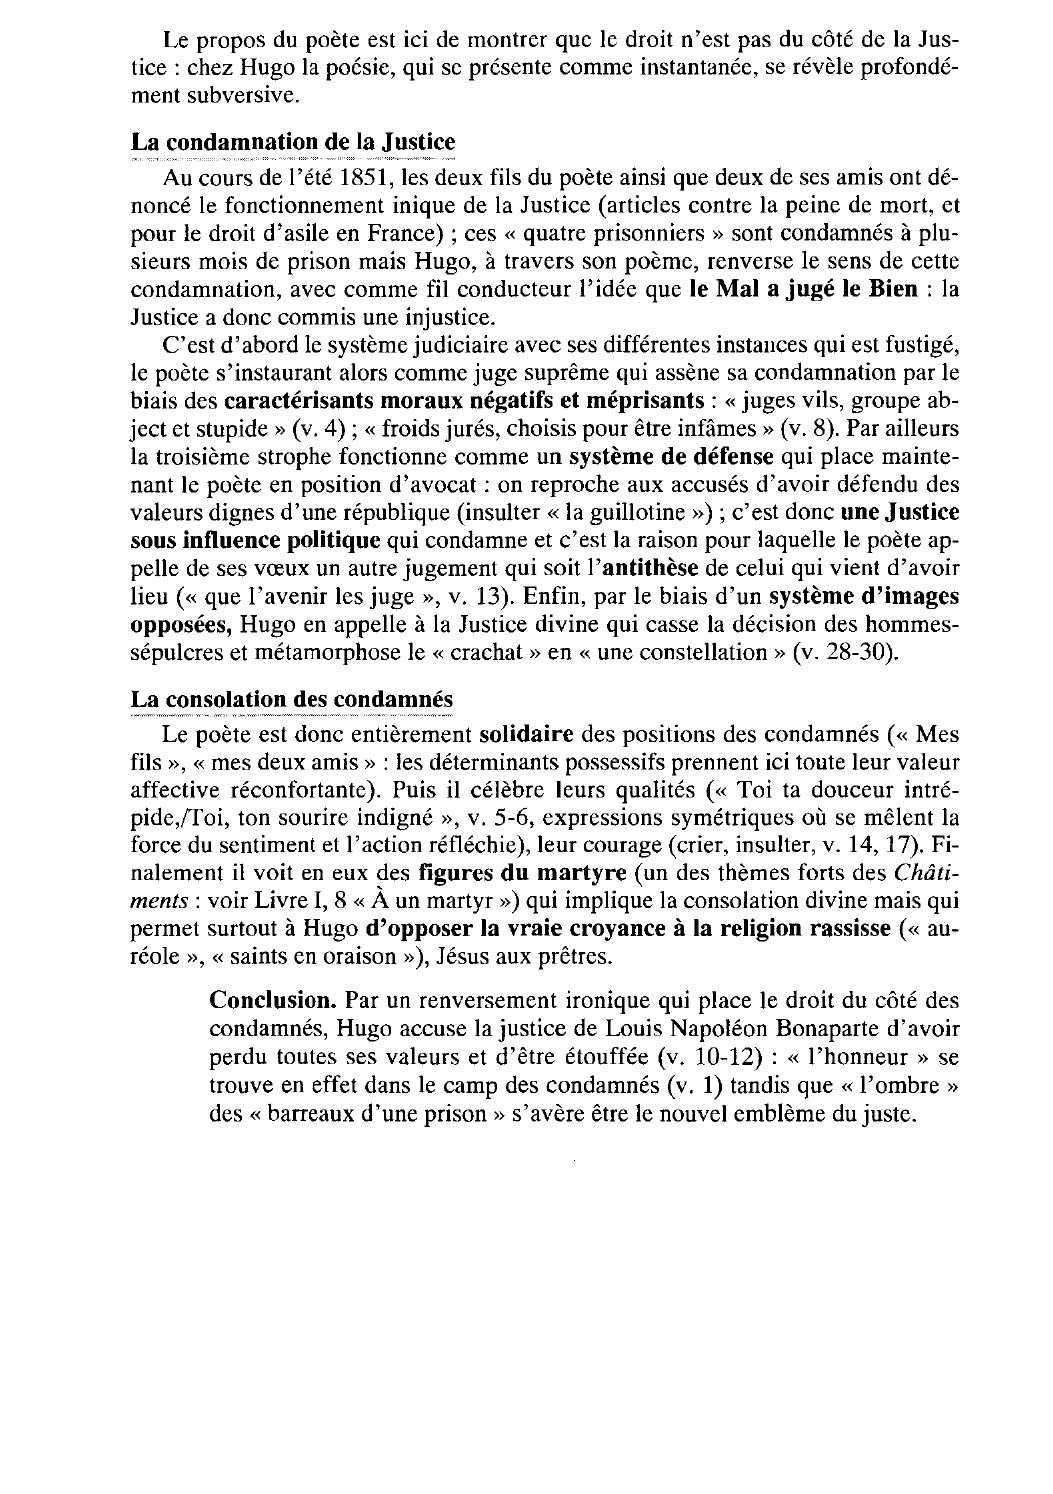 Prévisualisation du document À quatre prisonniers (Livre IV, 12)  (après leur condamnation) - Hugo - Chatiments